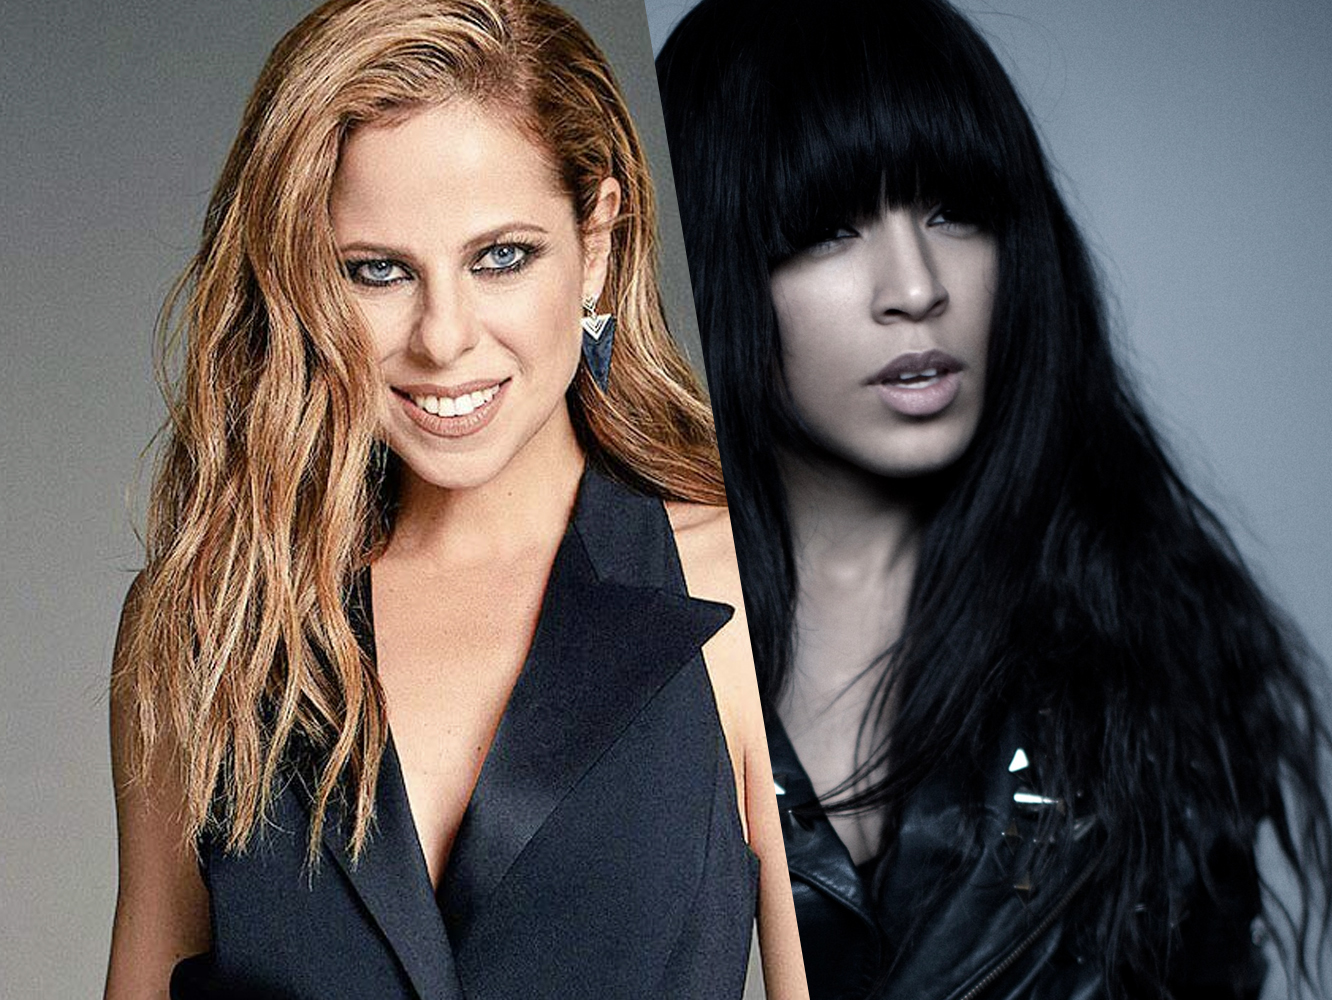  Las eurovisivas Loreen y Pastora Soler lanzan nuevo singles, ‘Body’ y ‘La Tormenta’